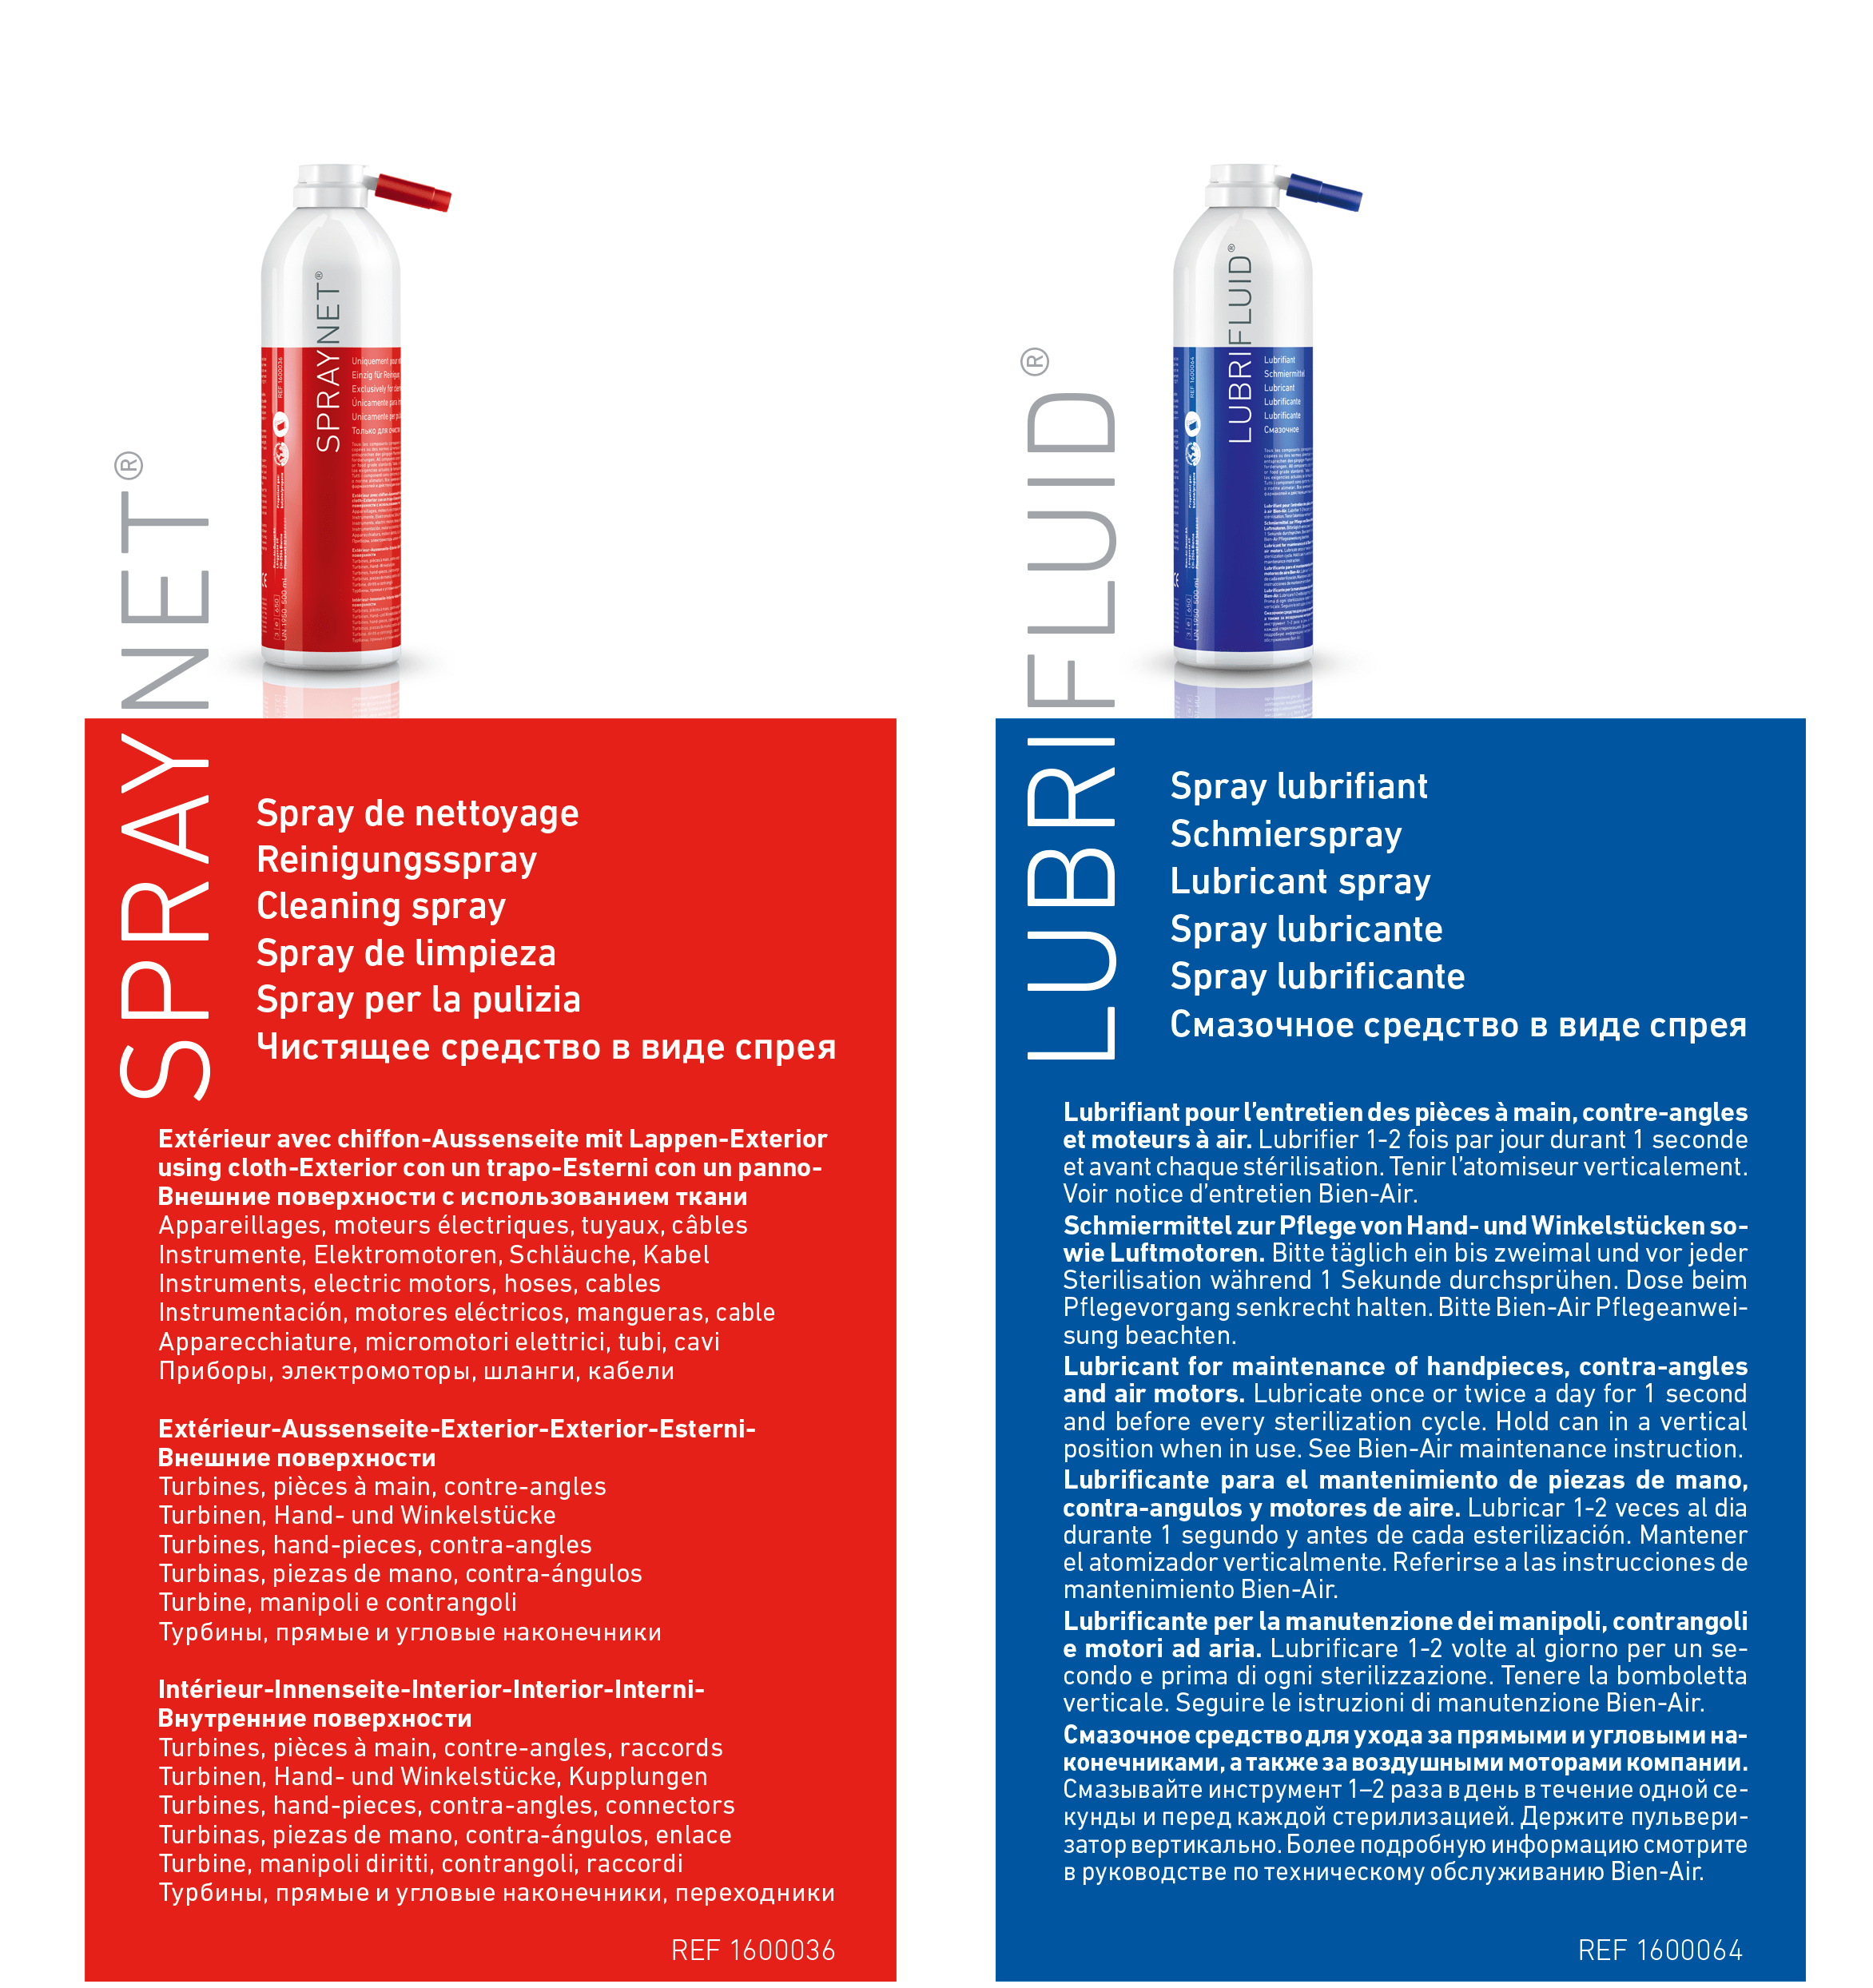 Duo Pack Bien Air: Spraynet / Lubrifluid